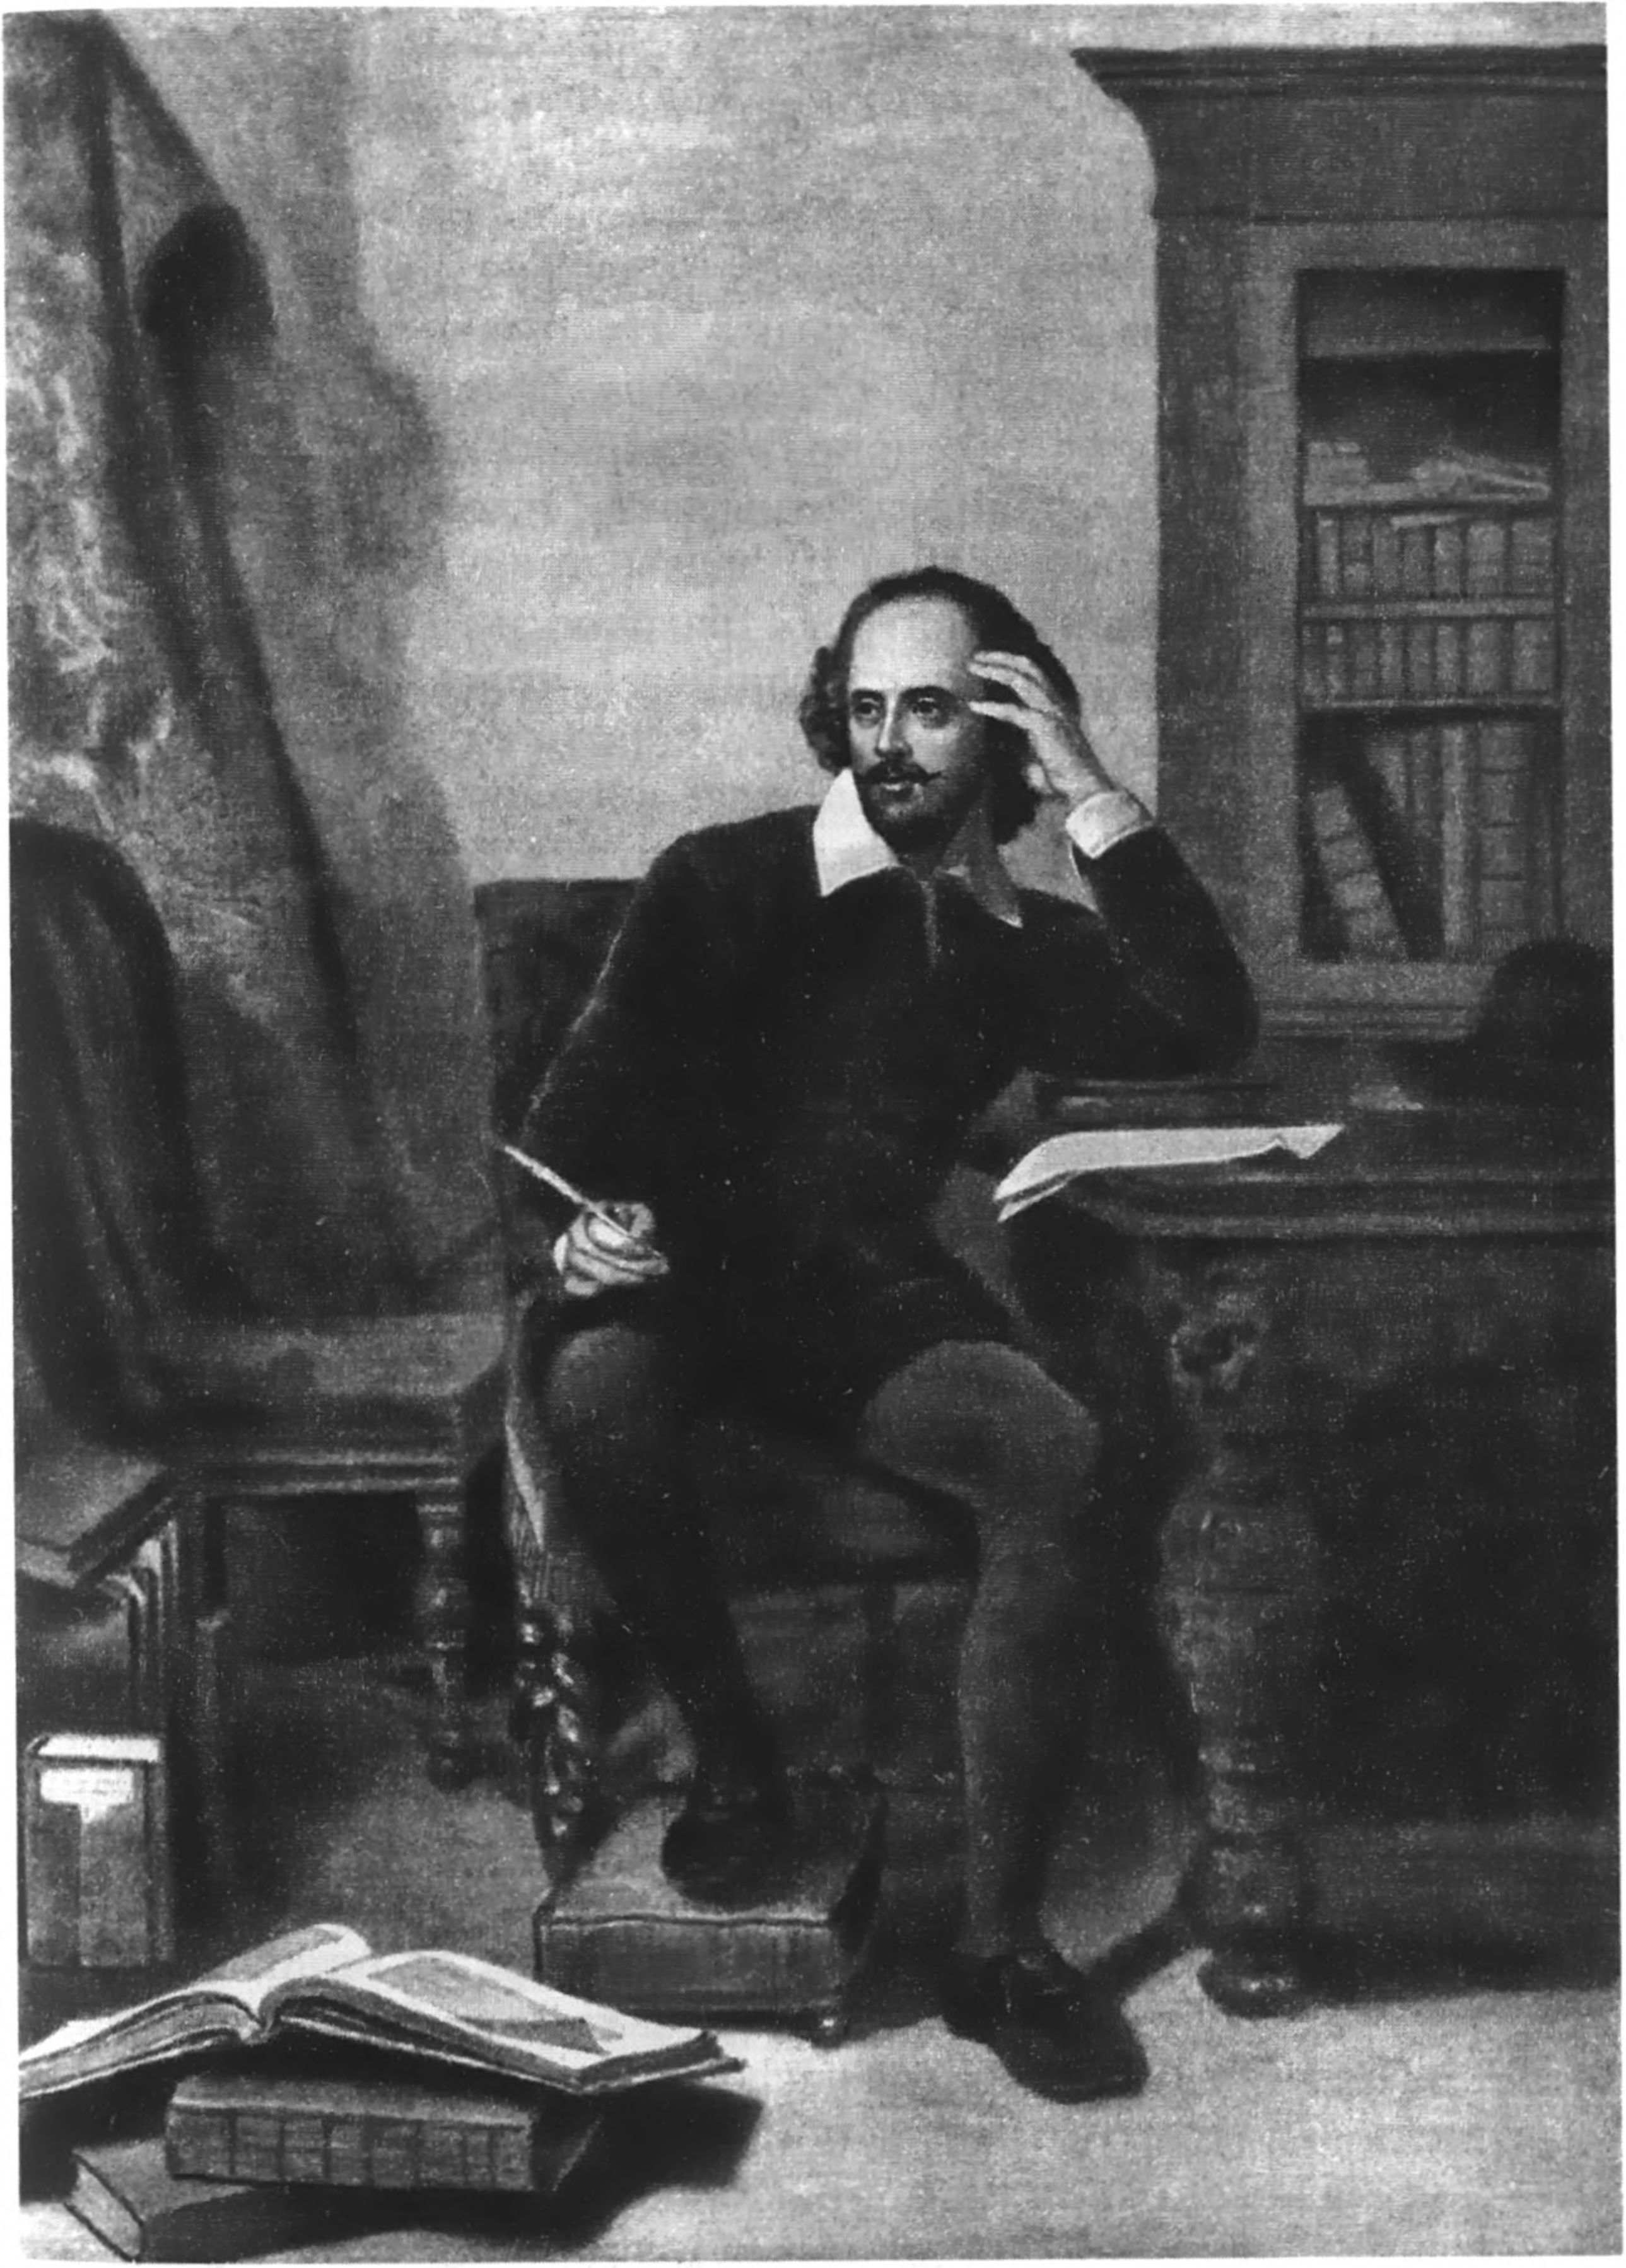 Так представлял себе Шекспира за работой в кабинете художник XIX века Джон Фэд. Книги, книги...